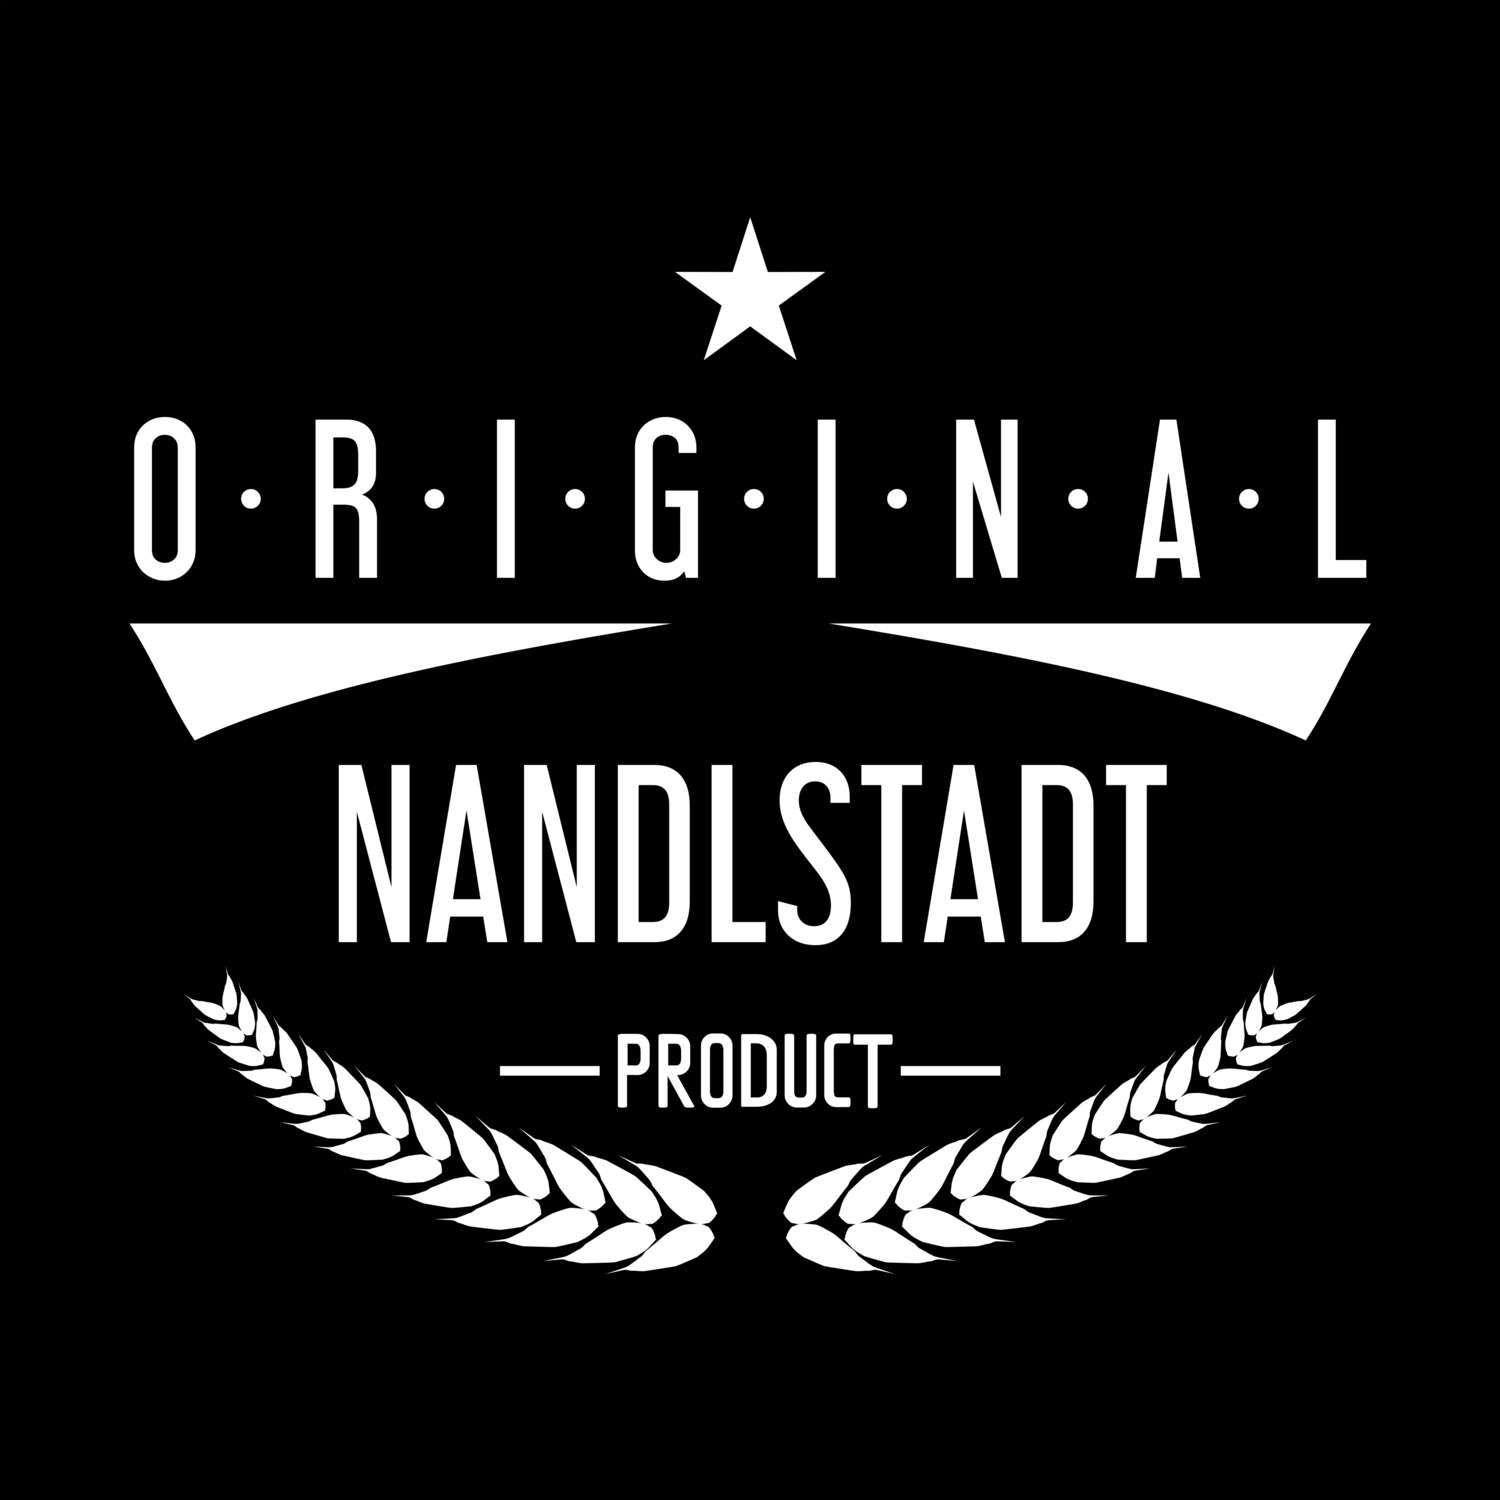 Nandlstadt T-Shirt »Original Product«